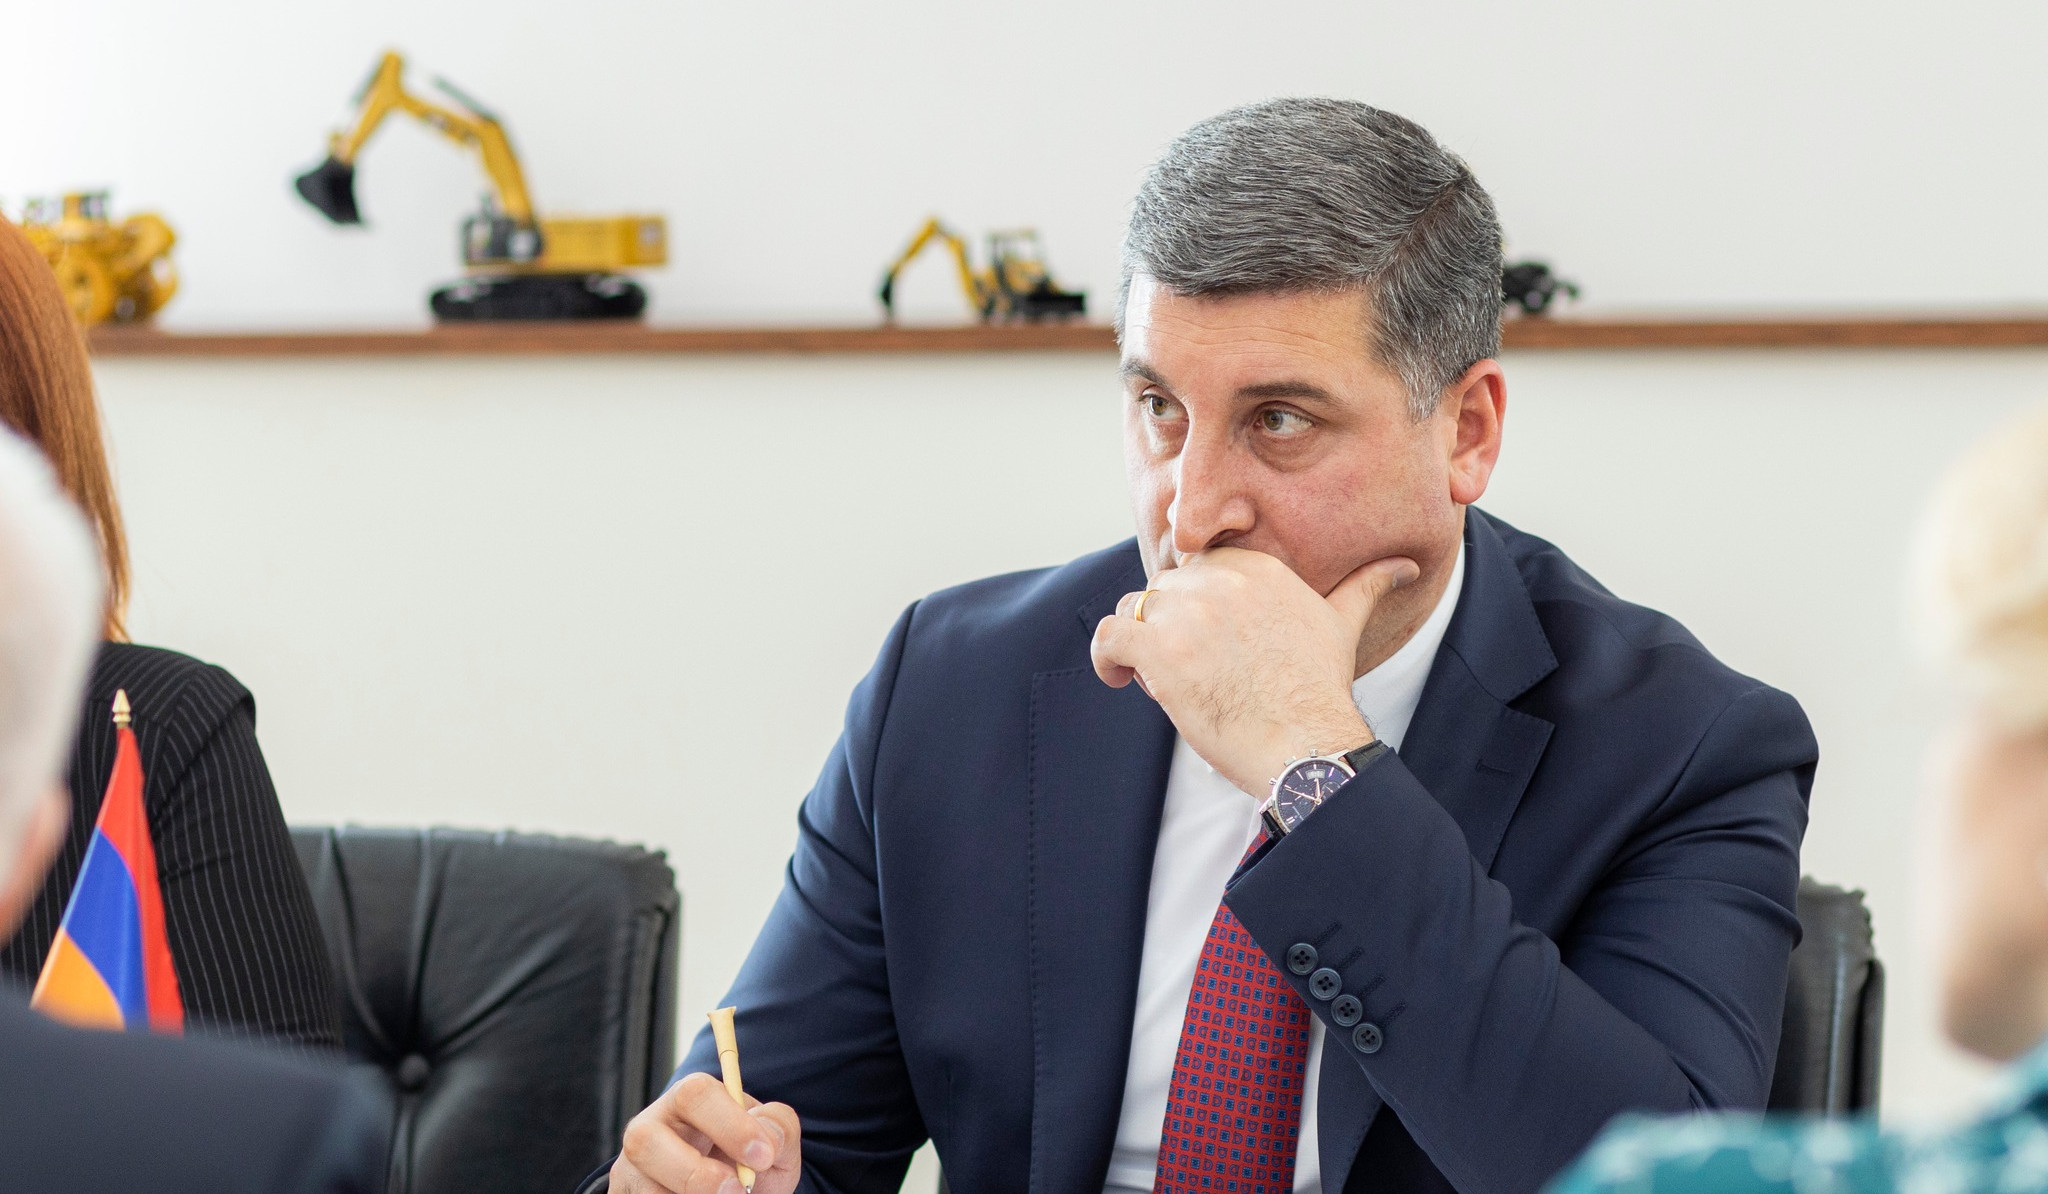 Սանոսյանն ու ՌԴ դեսպանը քննարկել են Հայկական ԱԷԿ-ի երկրորդ էներգաբլոկի շահագործման ժամկետի երկարաձգման աշխատանքների վերաբերյալ հարցեր